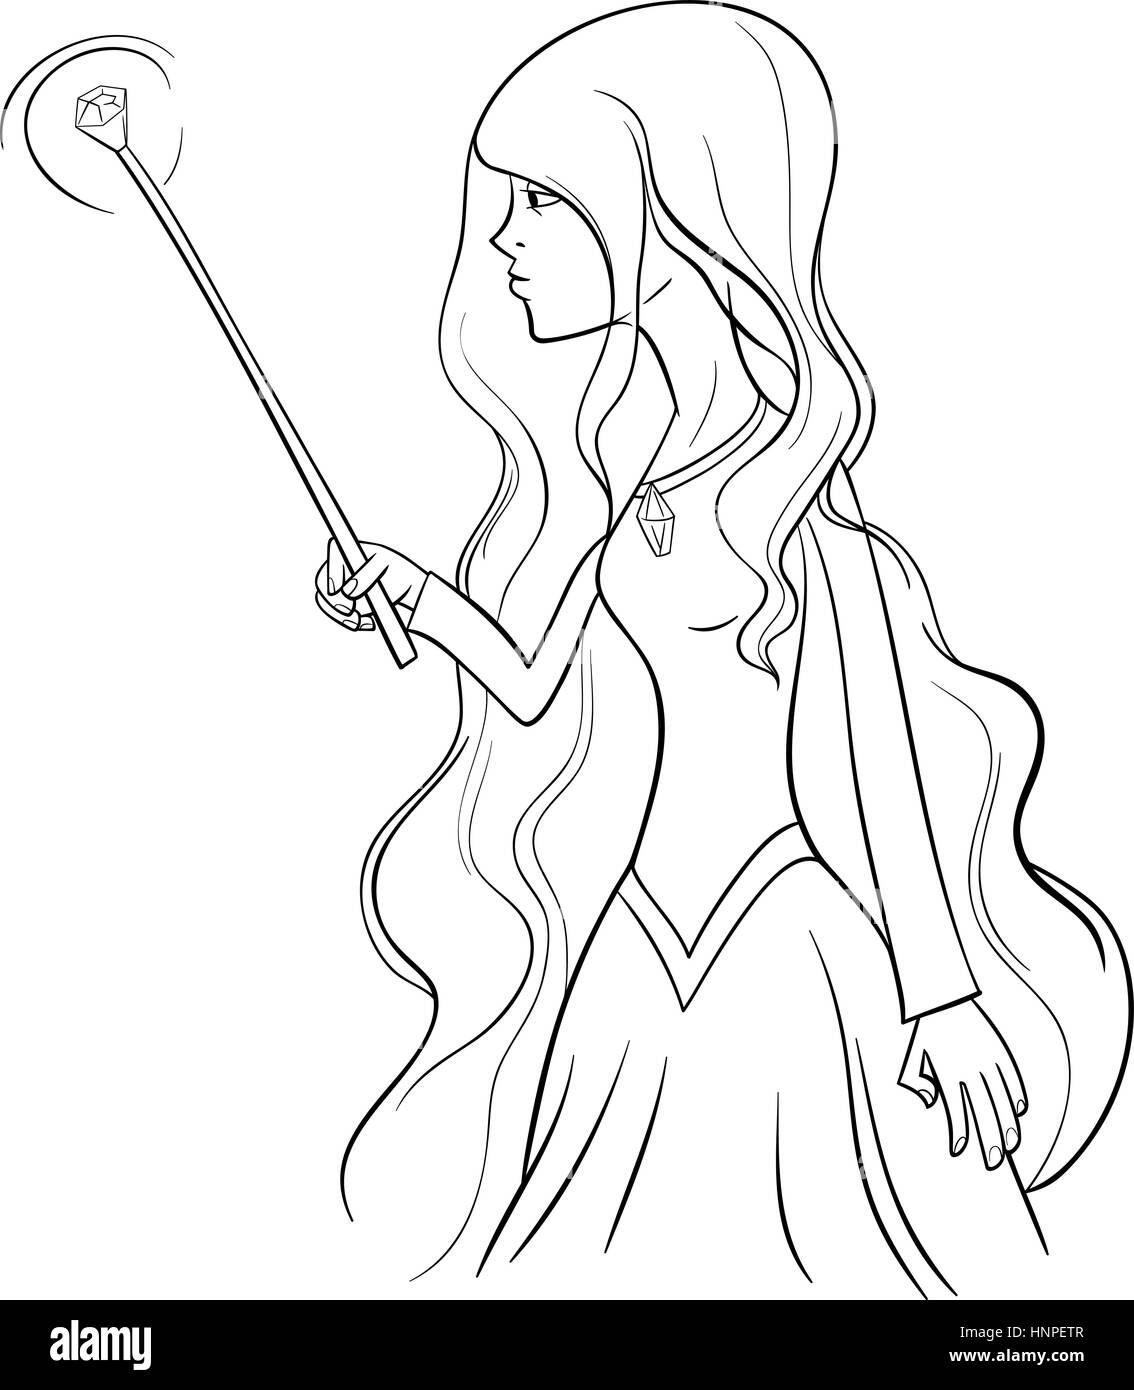 Bianco e Nero Cartoon illustrazione della strega fantasia donna di carattere nella pagina di colorazione Illustrazione Vettoriale